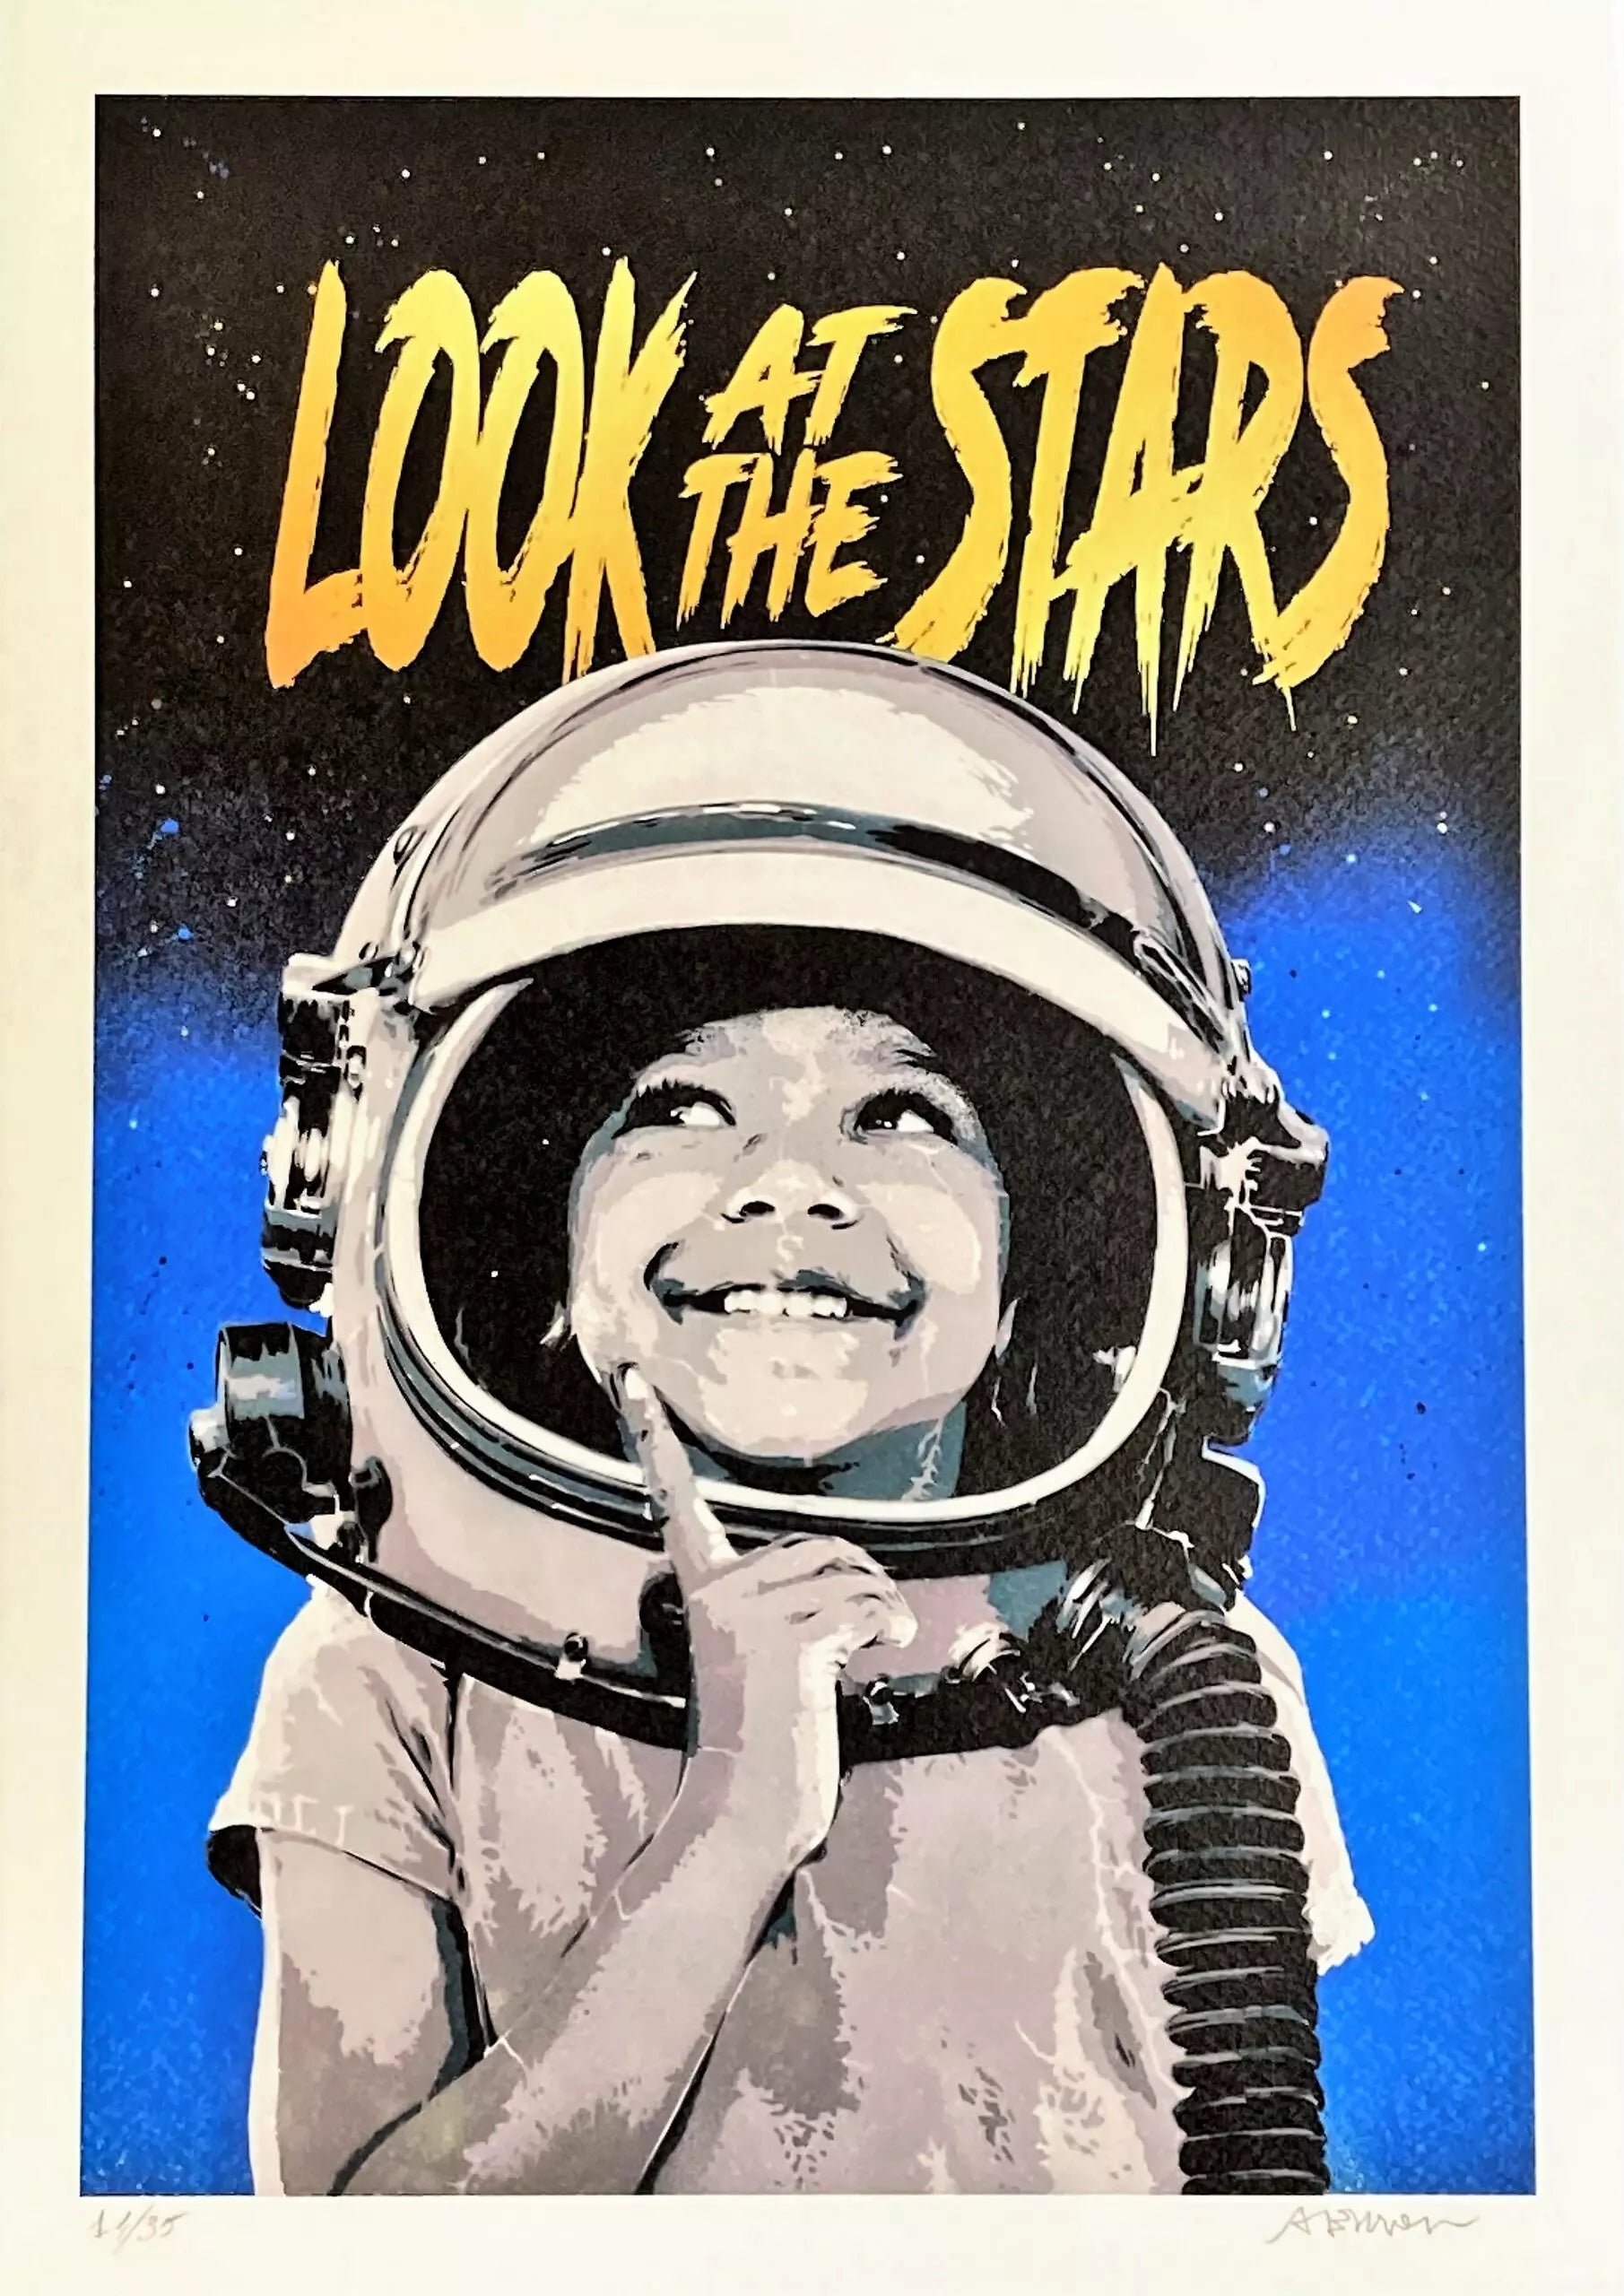 Look At The Stars Blue Edition di Alessio-B. Stampa giclée stampa giclée su carta 320 gsm edizione limitata rappresentante un bambino vestito da astronauta su uno sfondo stellato, come omaggio al grande Stephen Hawking | CD Studio d'Arte